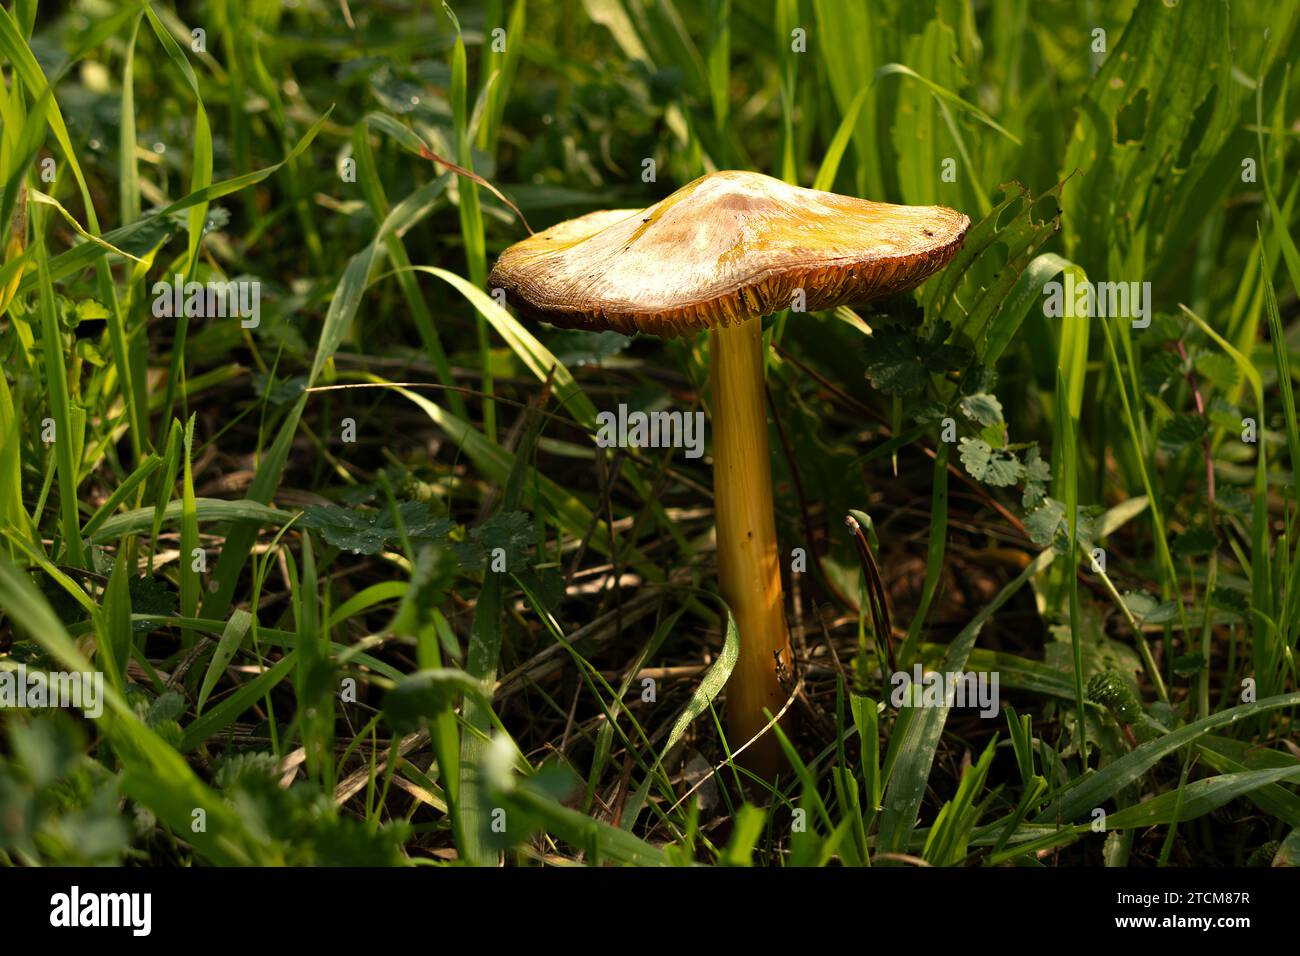 champignon auto-cultivé dans la nature Banque D'Images